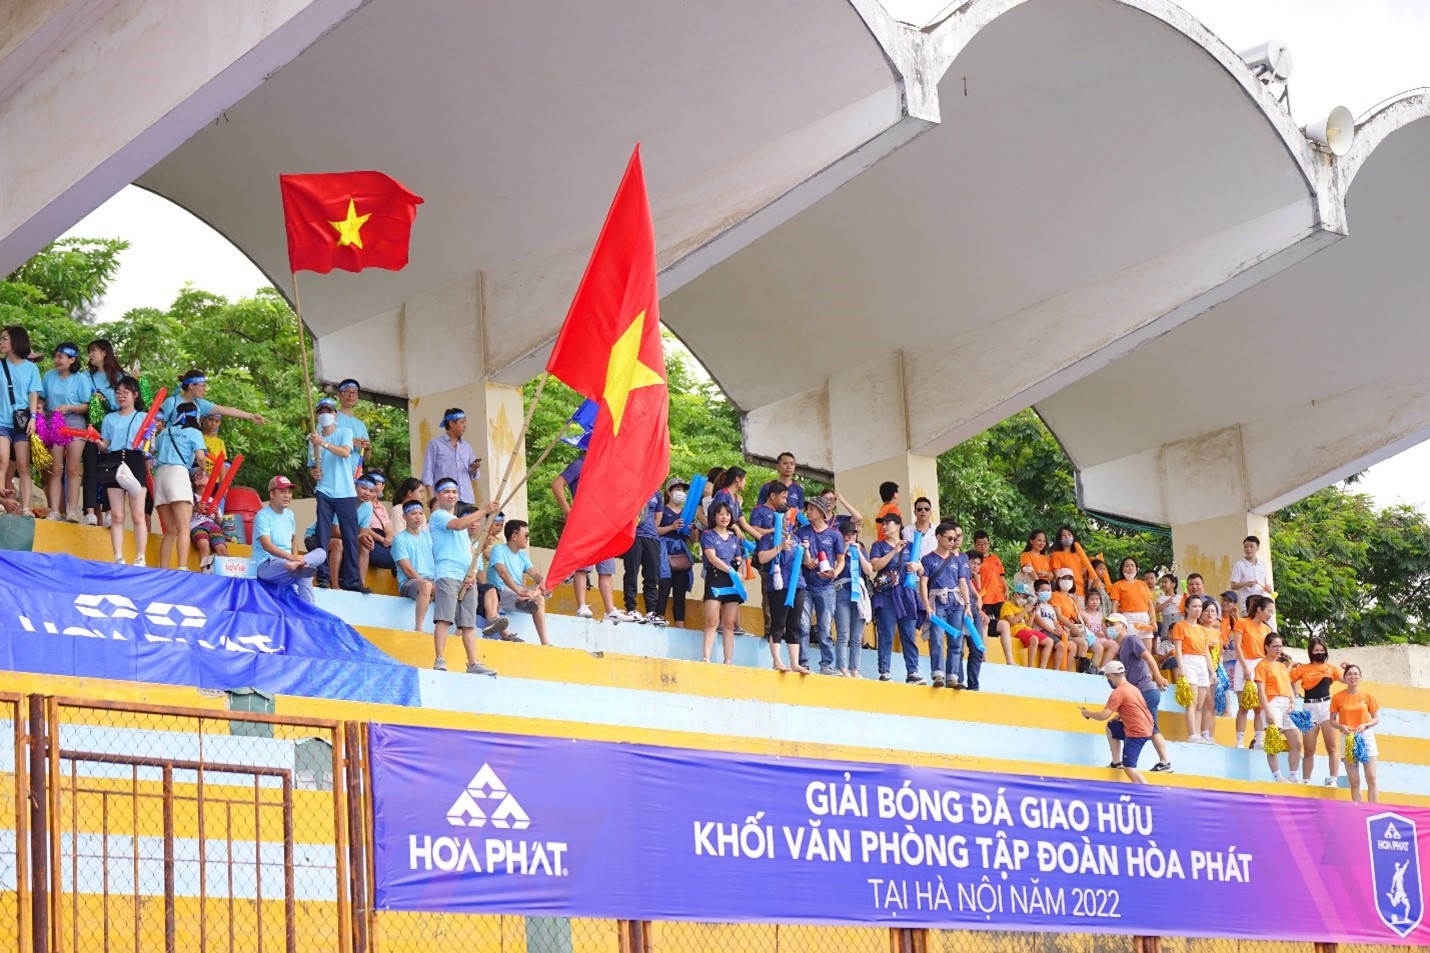 Khai mạc Giải bóng đá giao hữu khối văn phòng Tập đoàn Hòa Phát tại Hà Nội năm 2022 